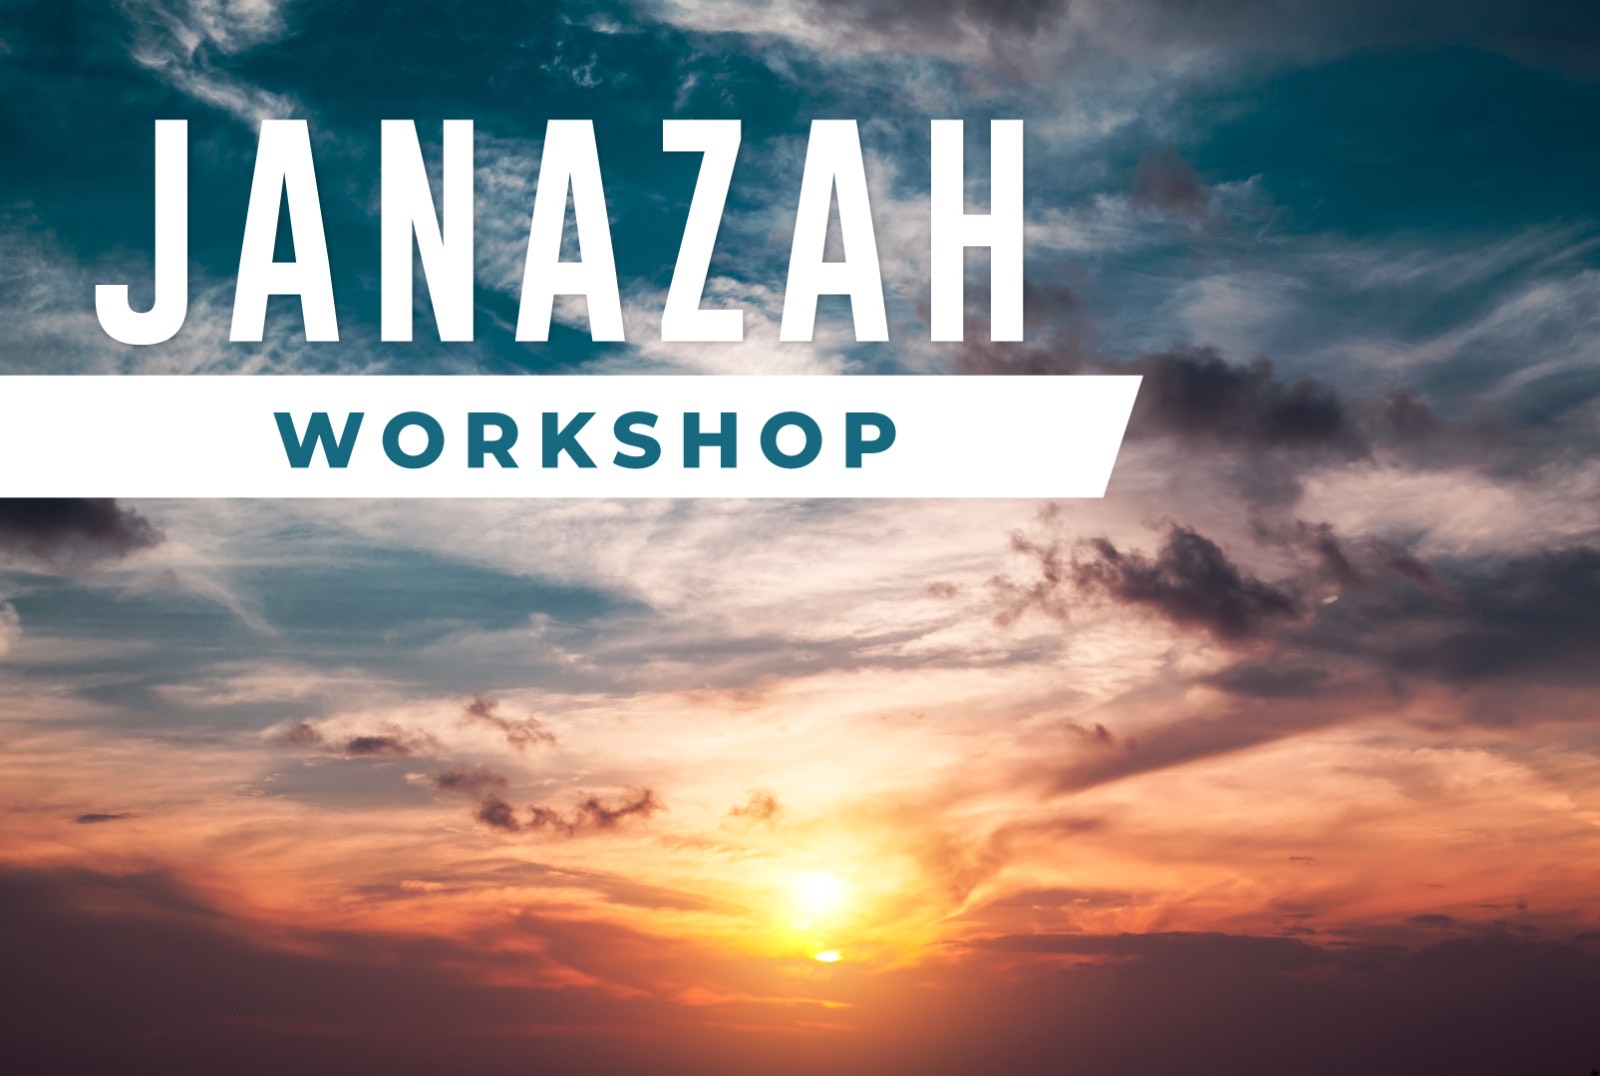 Janazah Workshop